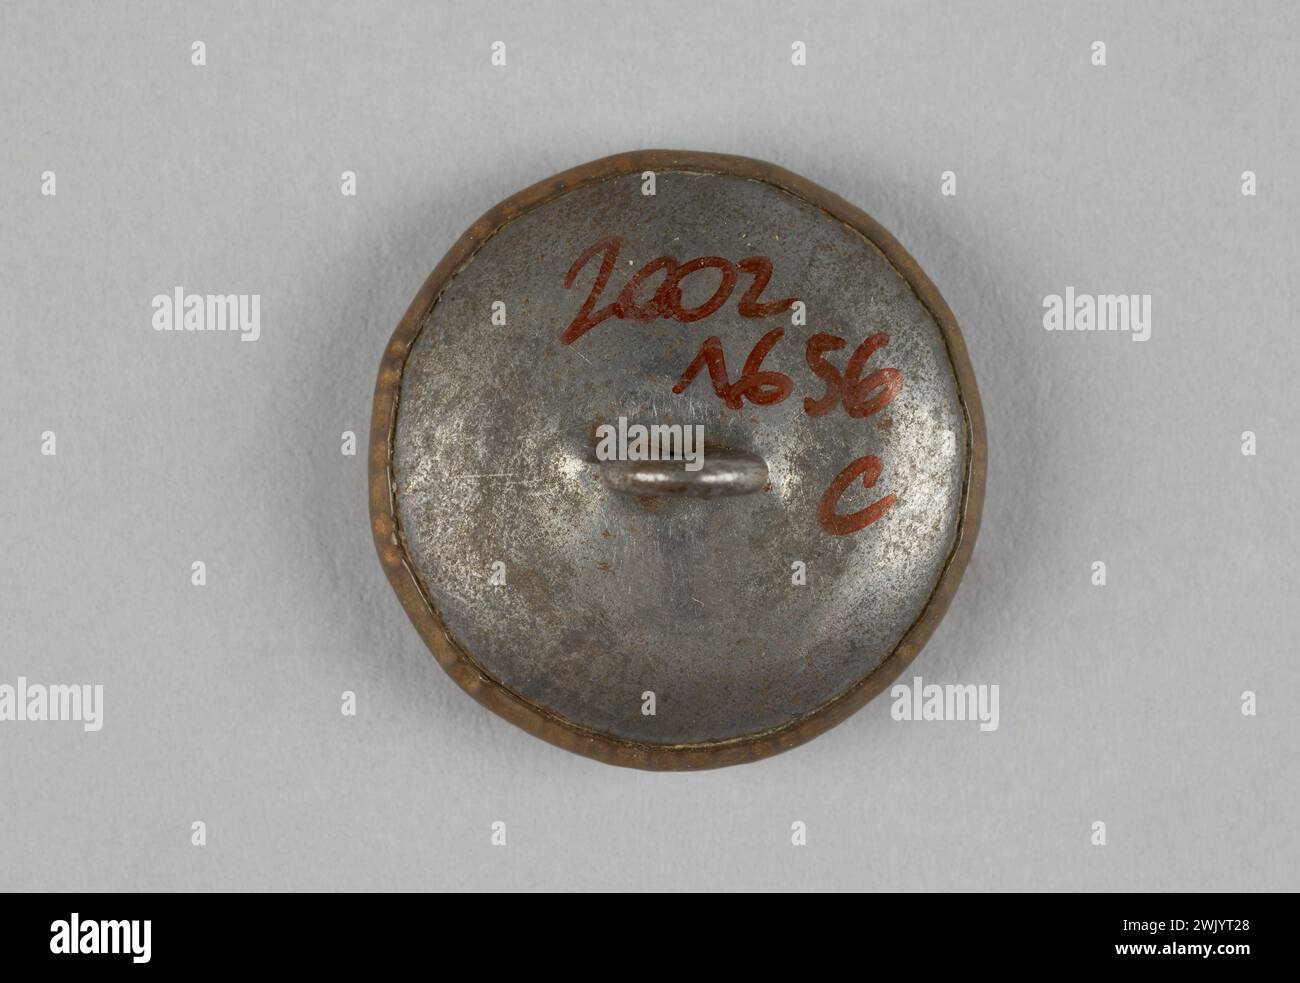 Anonym, Marineoffizier Button (zugeordneter Titel), 1925. Metall. General Leclerc Museum der Befreiung von Paris - Jean Moulin Museum. Stockfoto